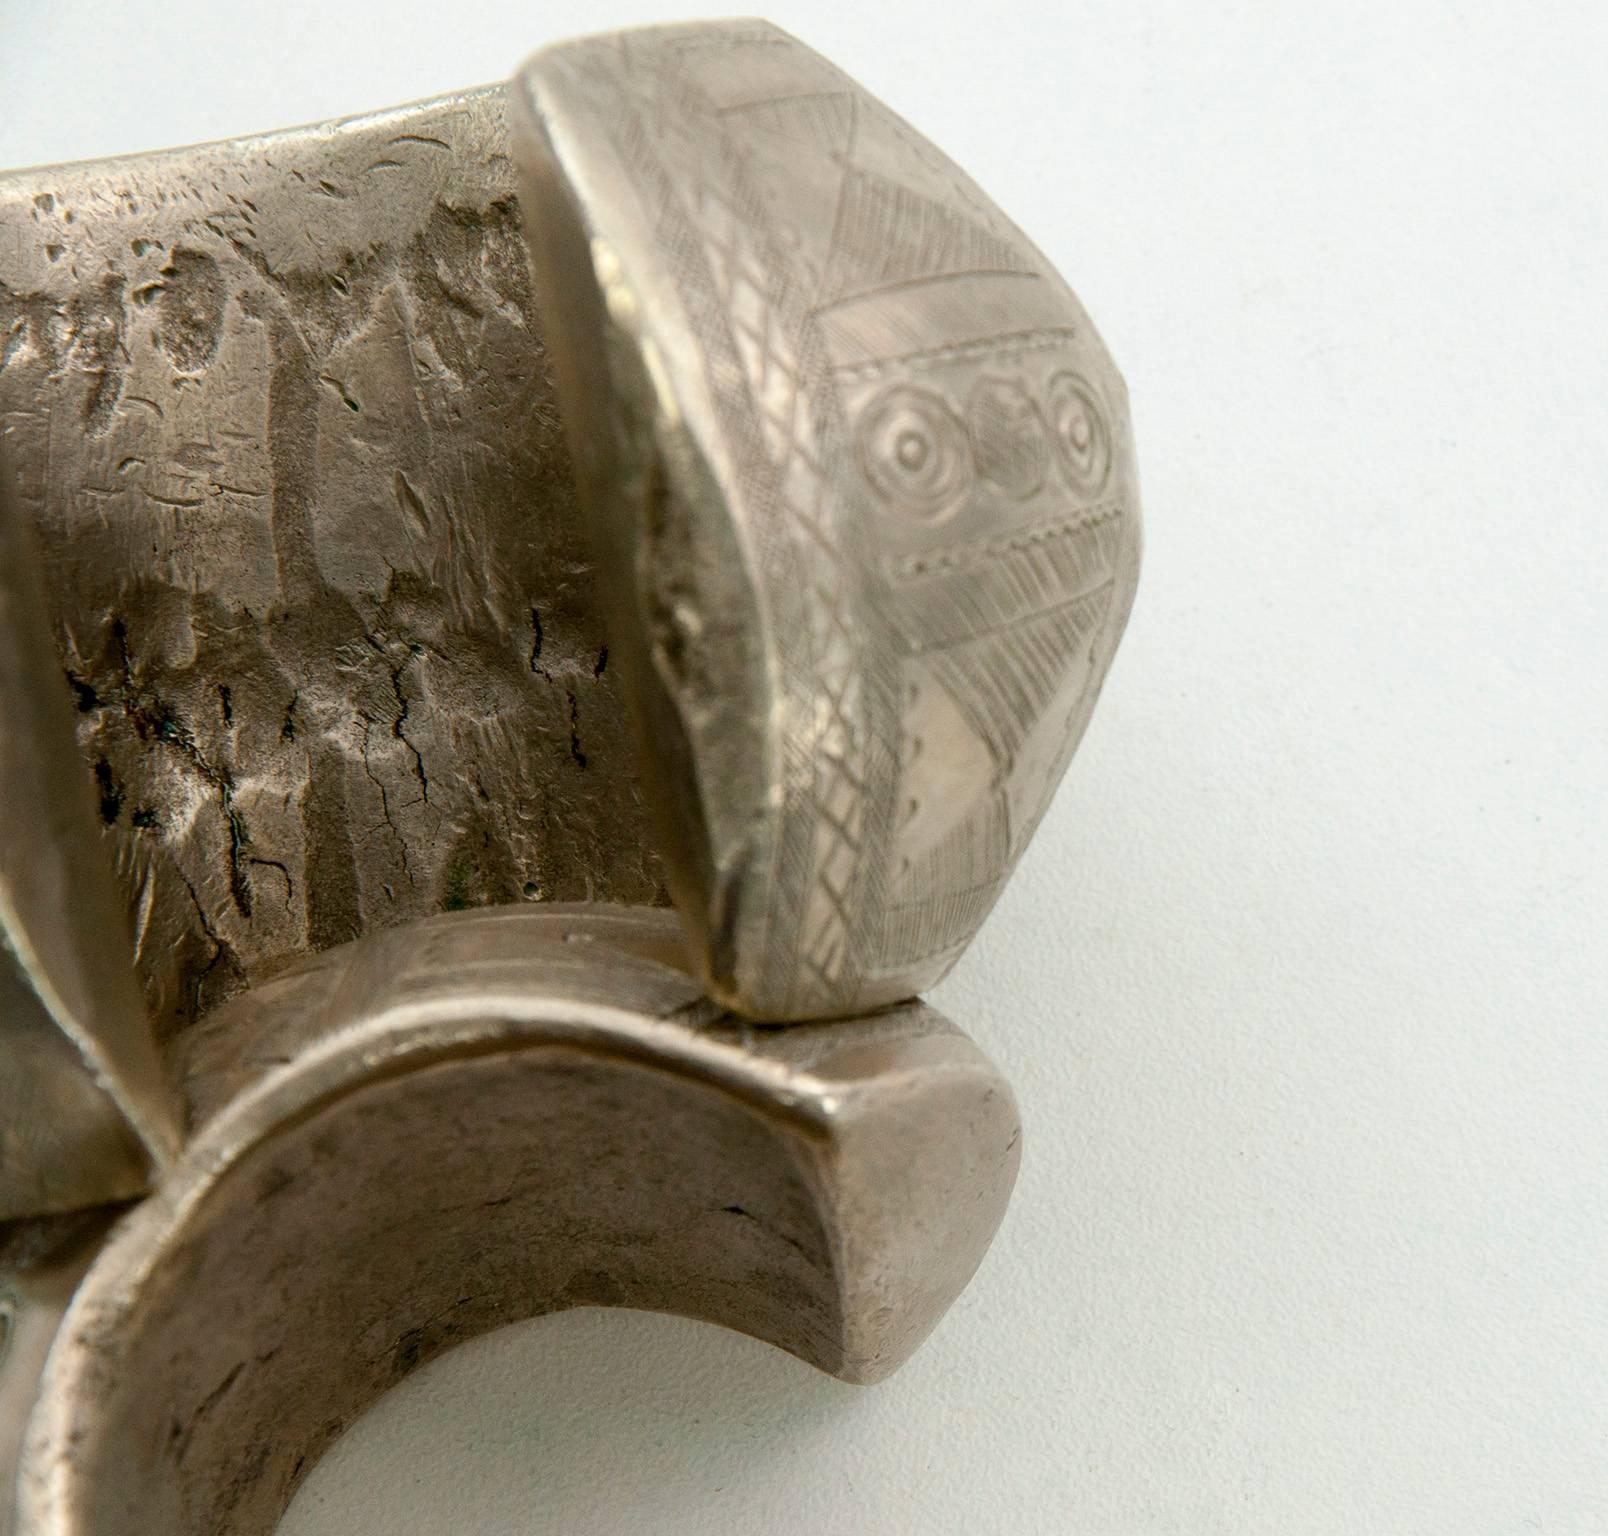 Colonial britannique Paire de bracelets de mariage africains en bronze massif